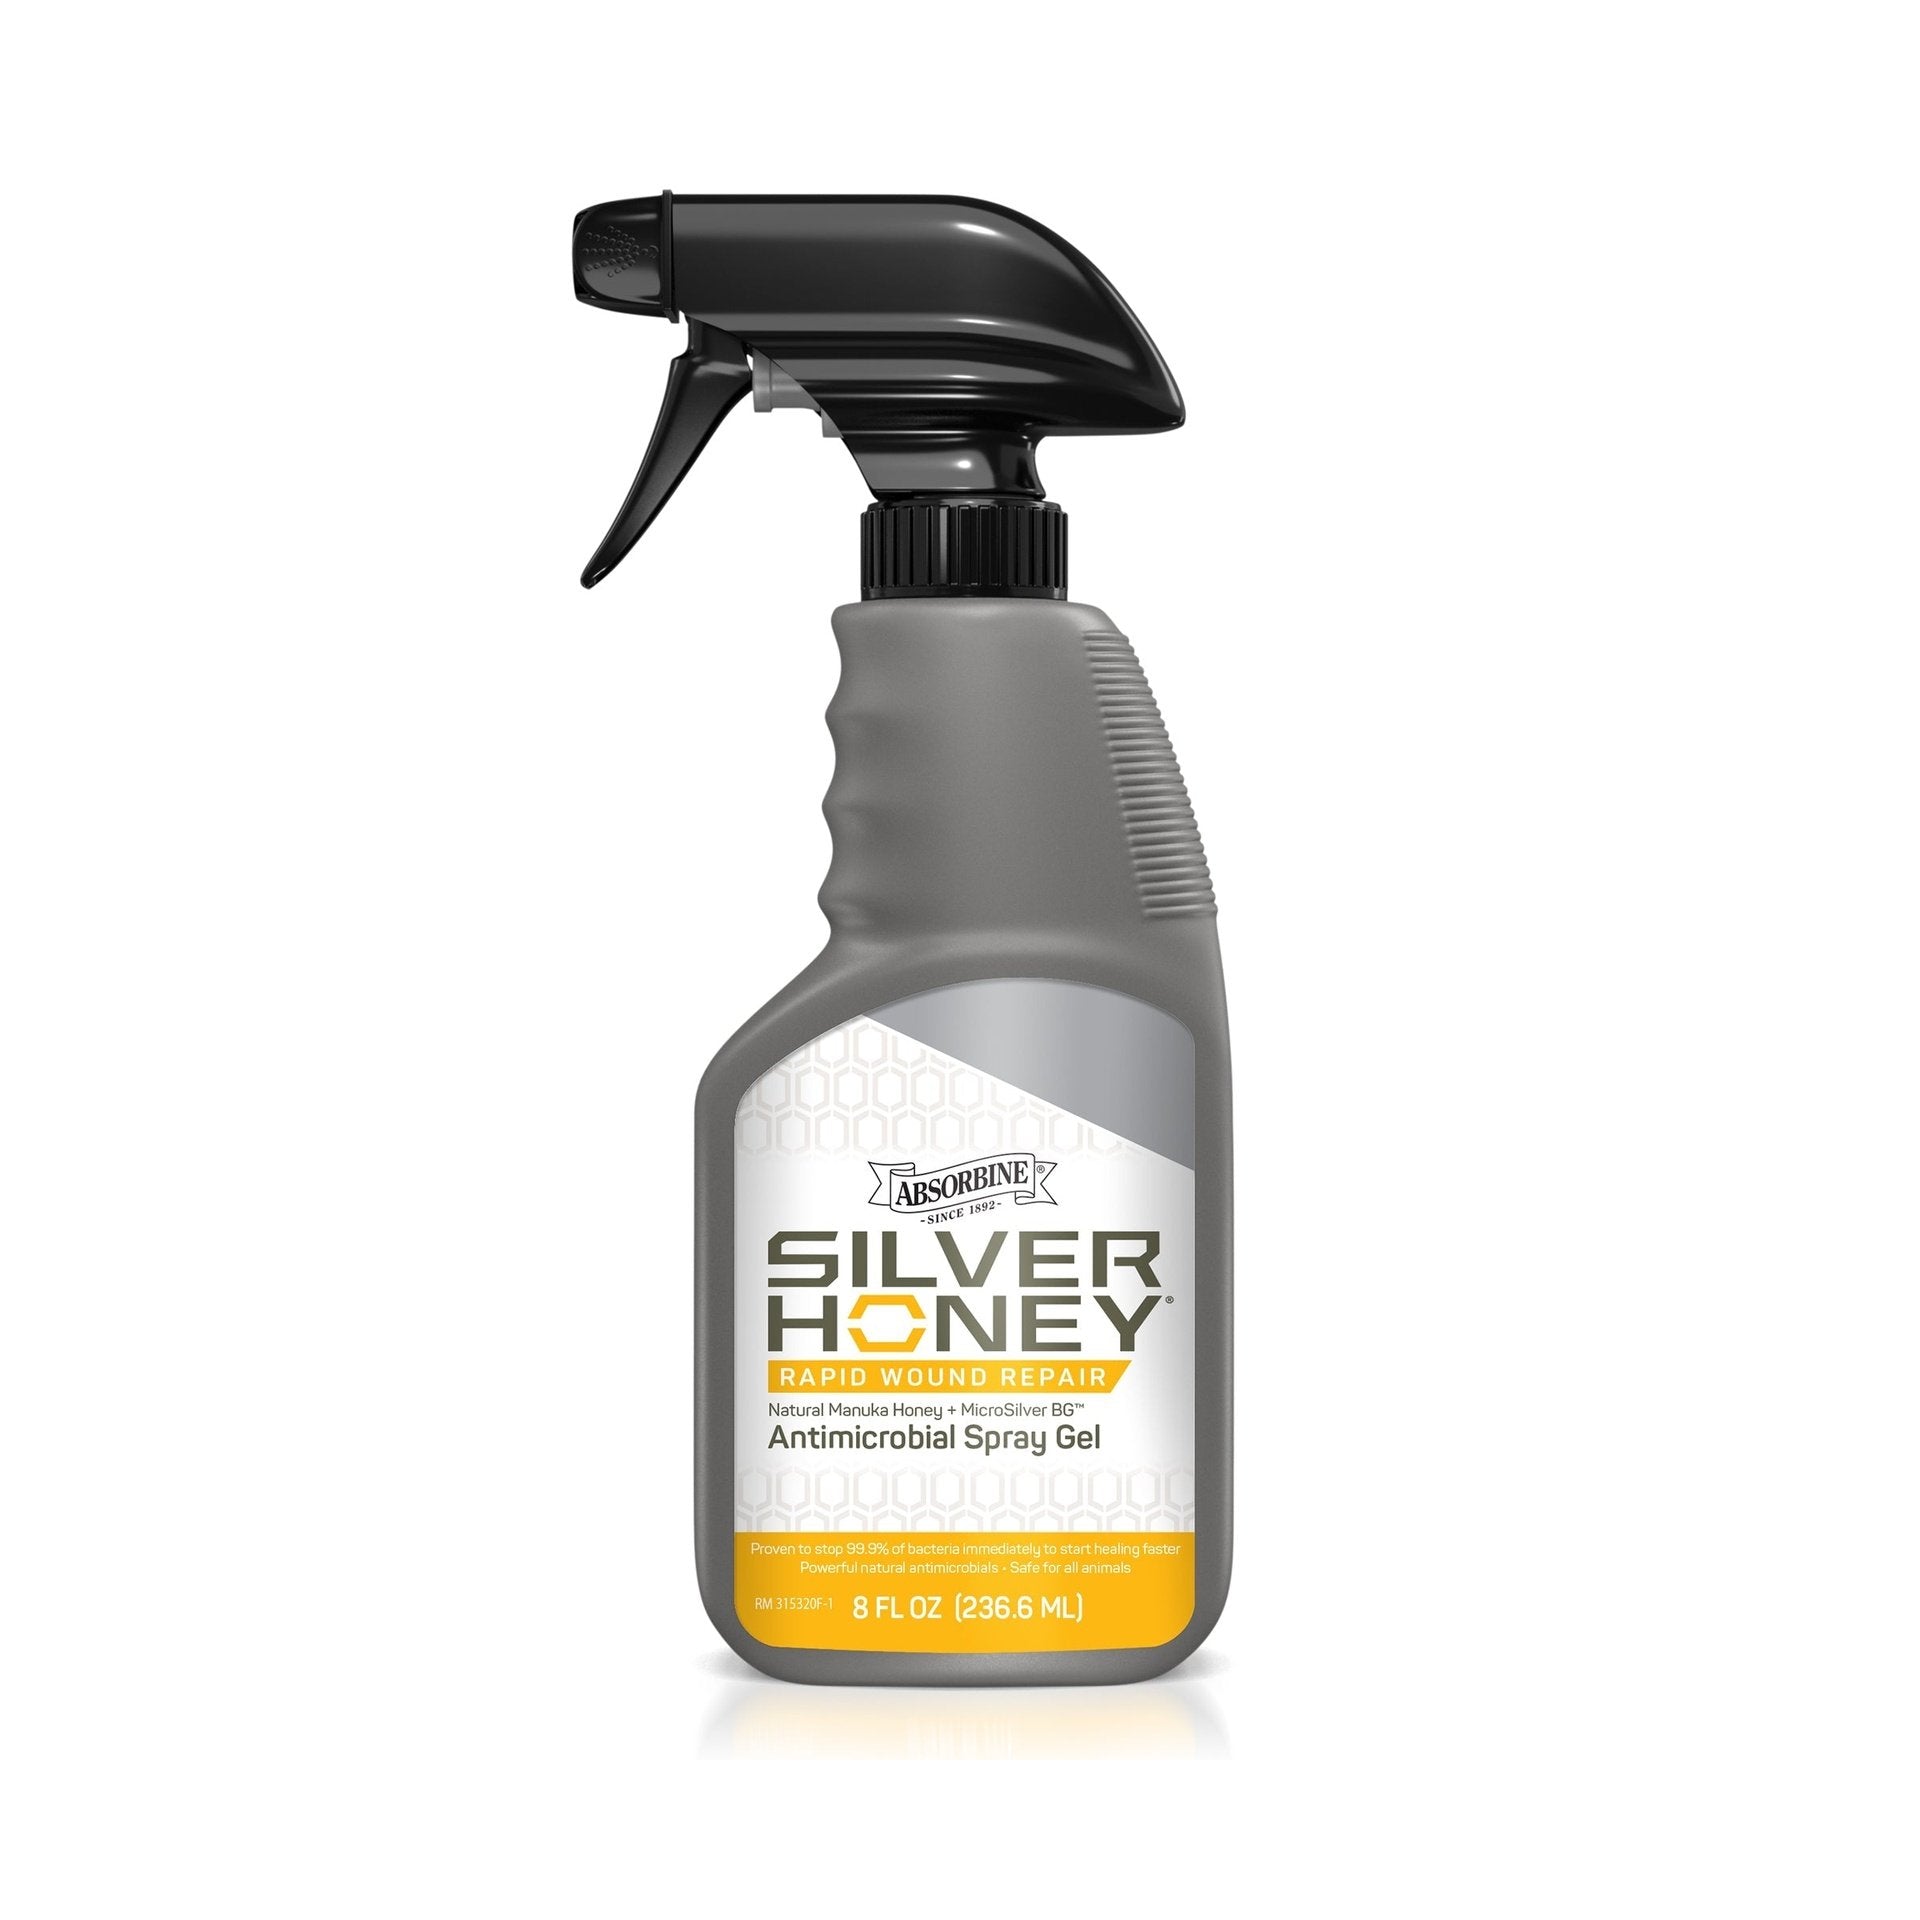 Antimicrobial Spray - Silver Honey, Absorbine